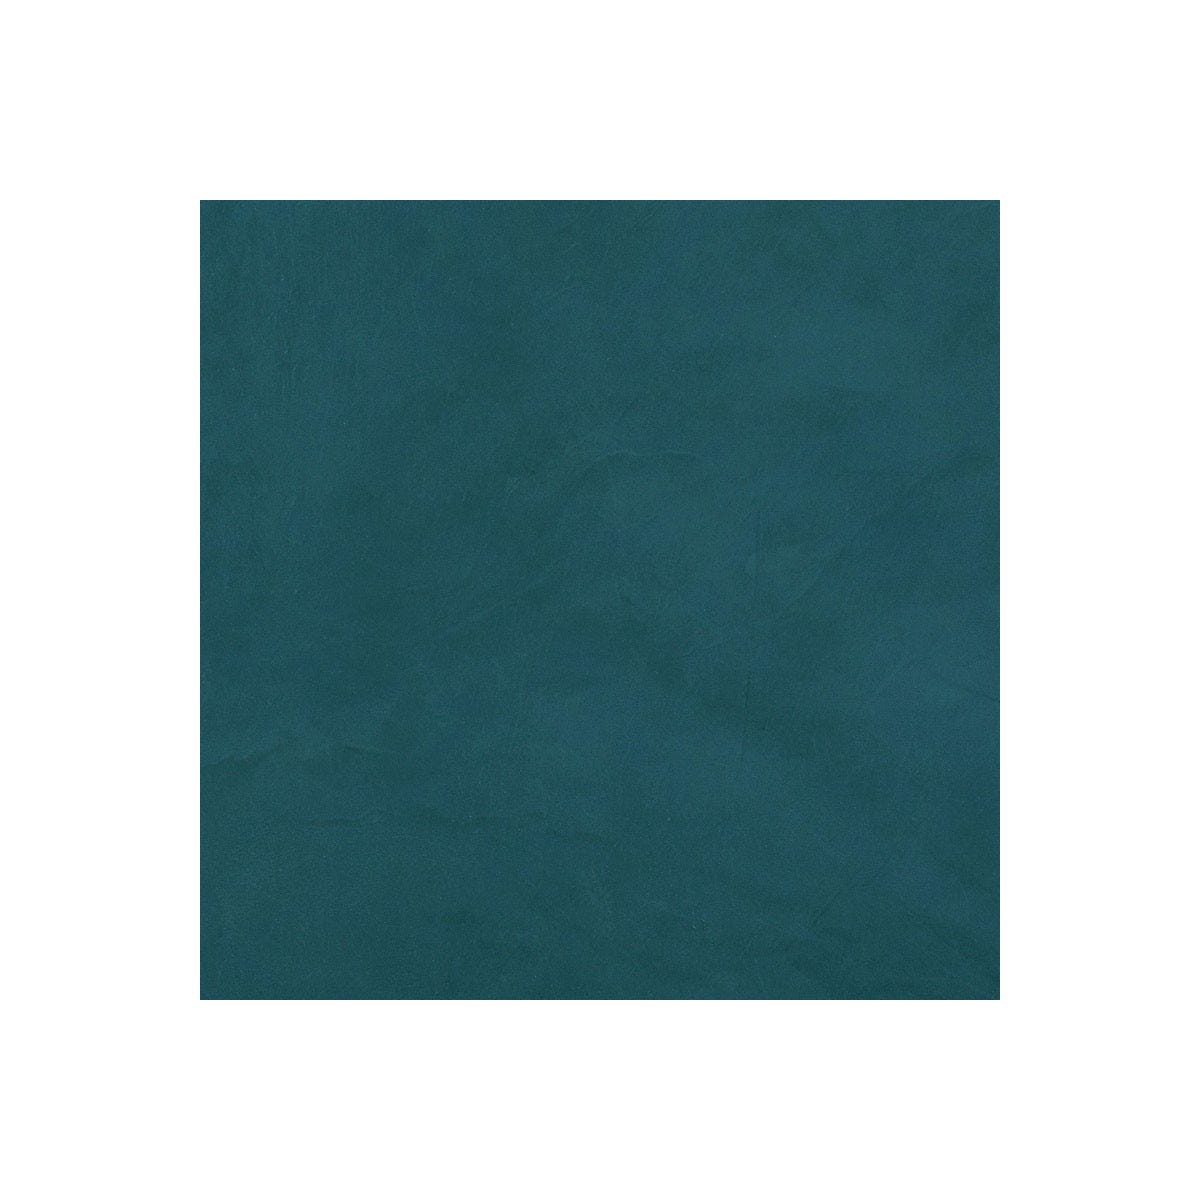 Béton Ciré Escalier - Complet primaire et vernis de finition - En neuf ou rénovation Turquin Bleu - 10 m² (en 2 couches)ARCANE INDUSTRIES 5